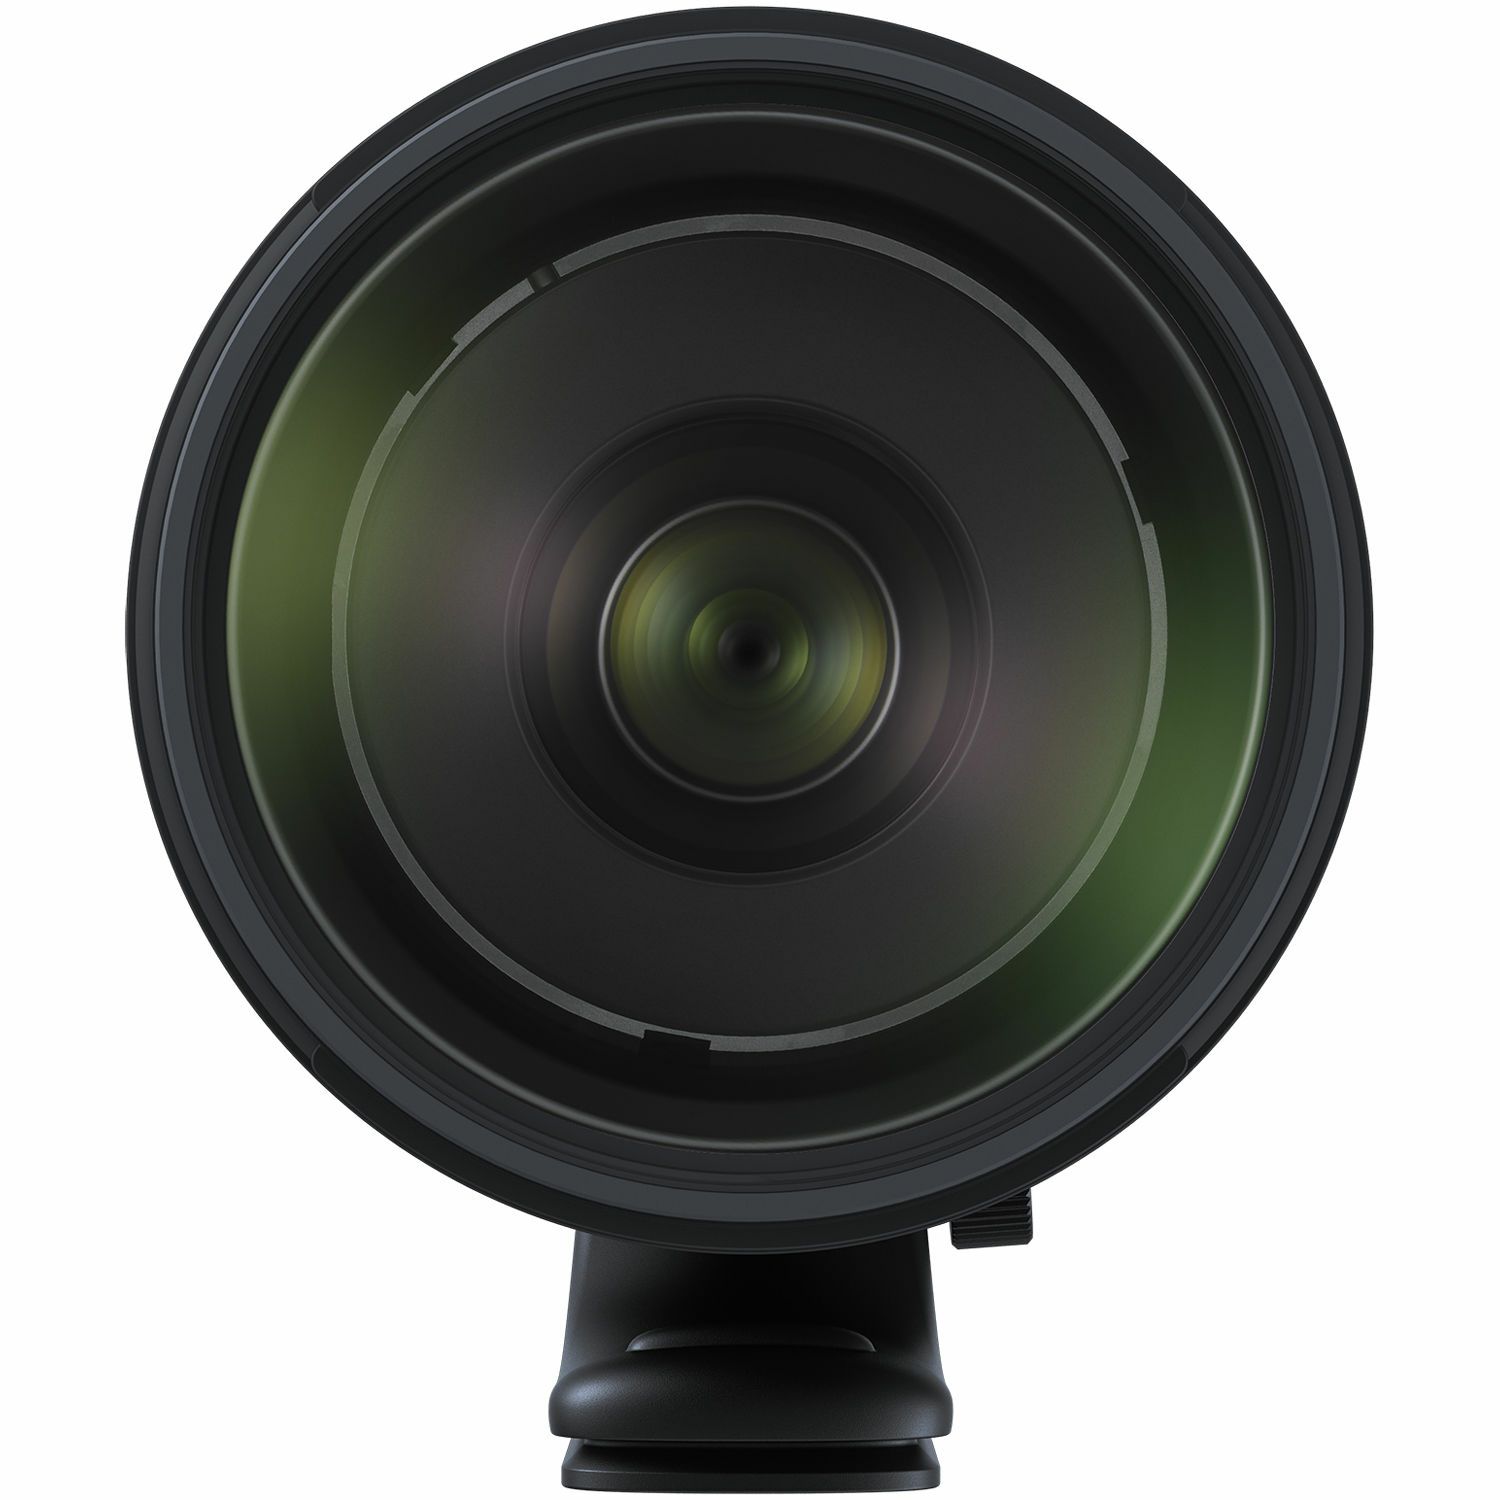 Tamron SP AF 150-600mm f/5-6.3 Di VC USD G2 telefoto objektiv za Canon EF (A022E)